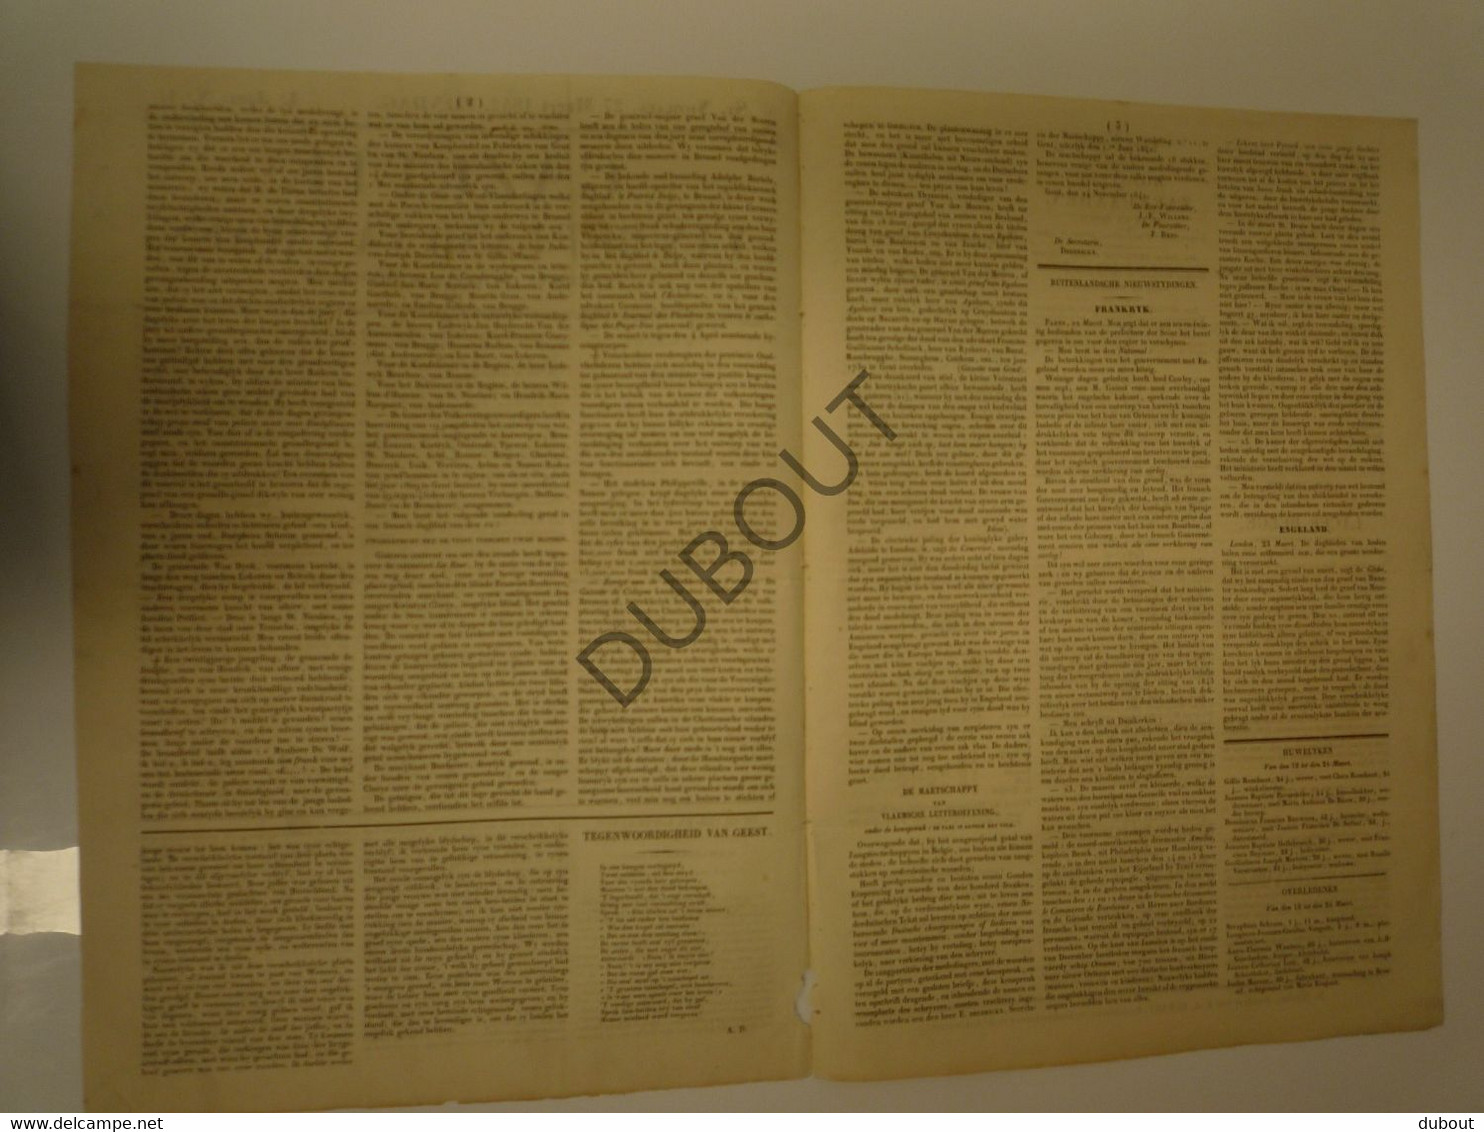 Krant:St-NIKLAAS:Gazette Van Het Land Van Waes - 27-3-1842 1ste Jaar Nr 1! (N708) - Allgemeine Literatur